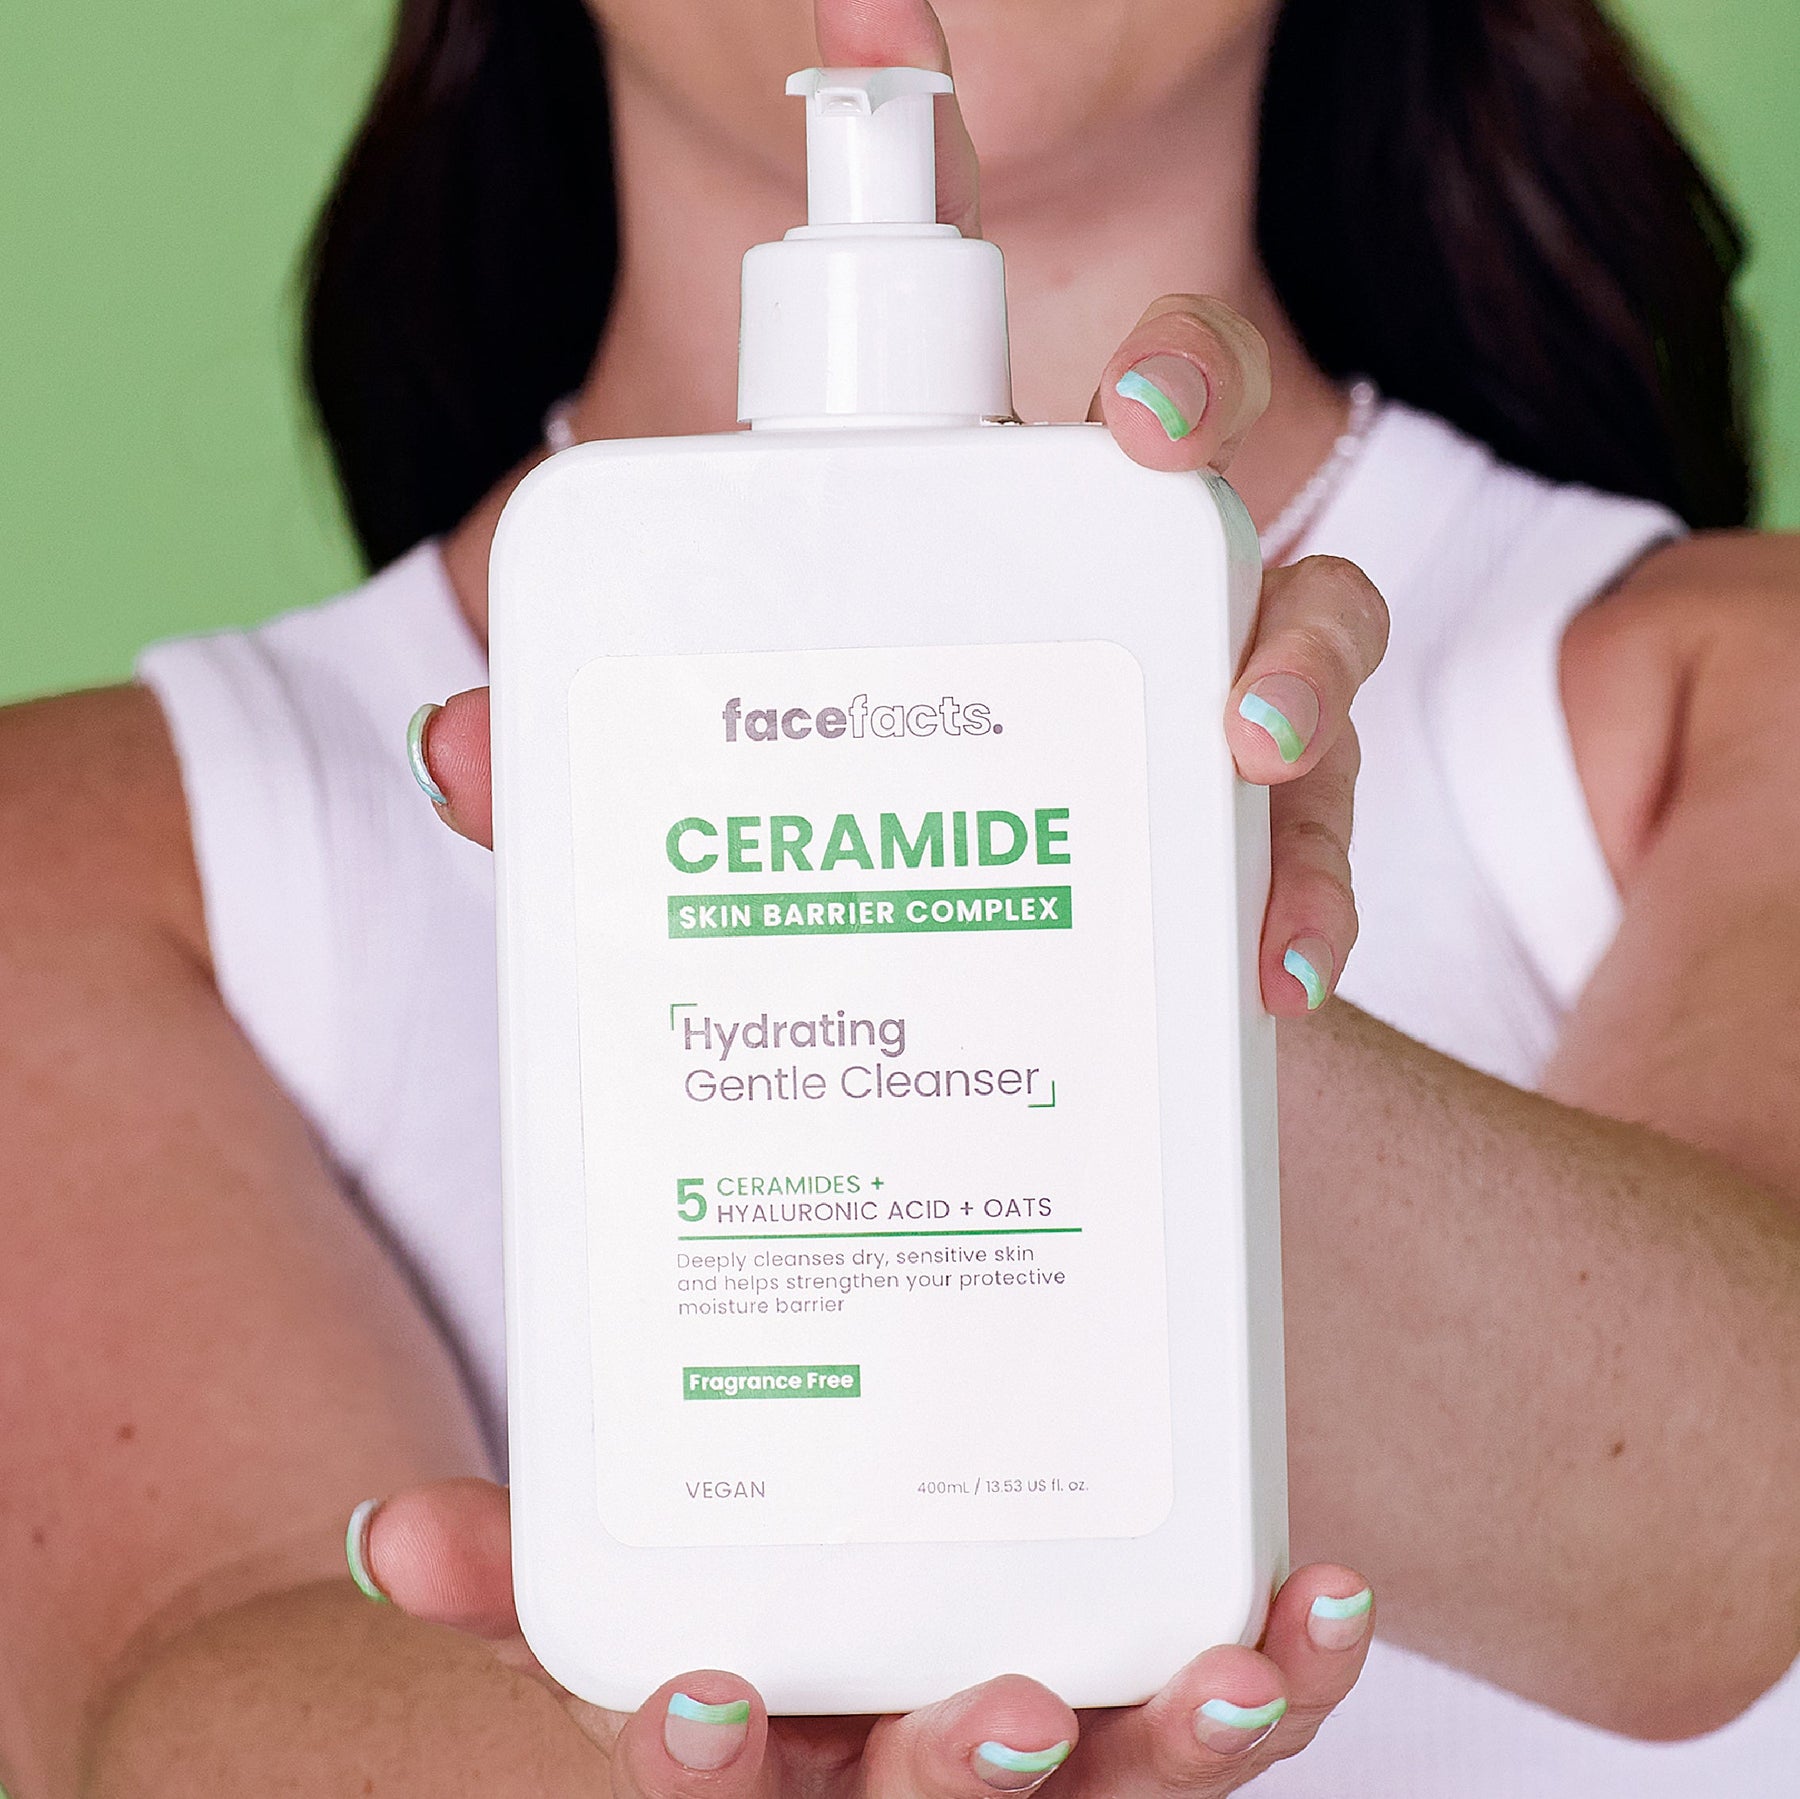 Увлажняющее средство с керамидами для очищения кожи лица Face Facts Ceramide Skin Barrier Complex Hydrating Gentle Cleanser 200 мл - фото 5